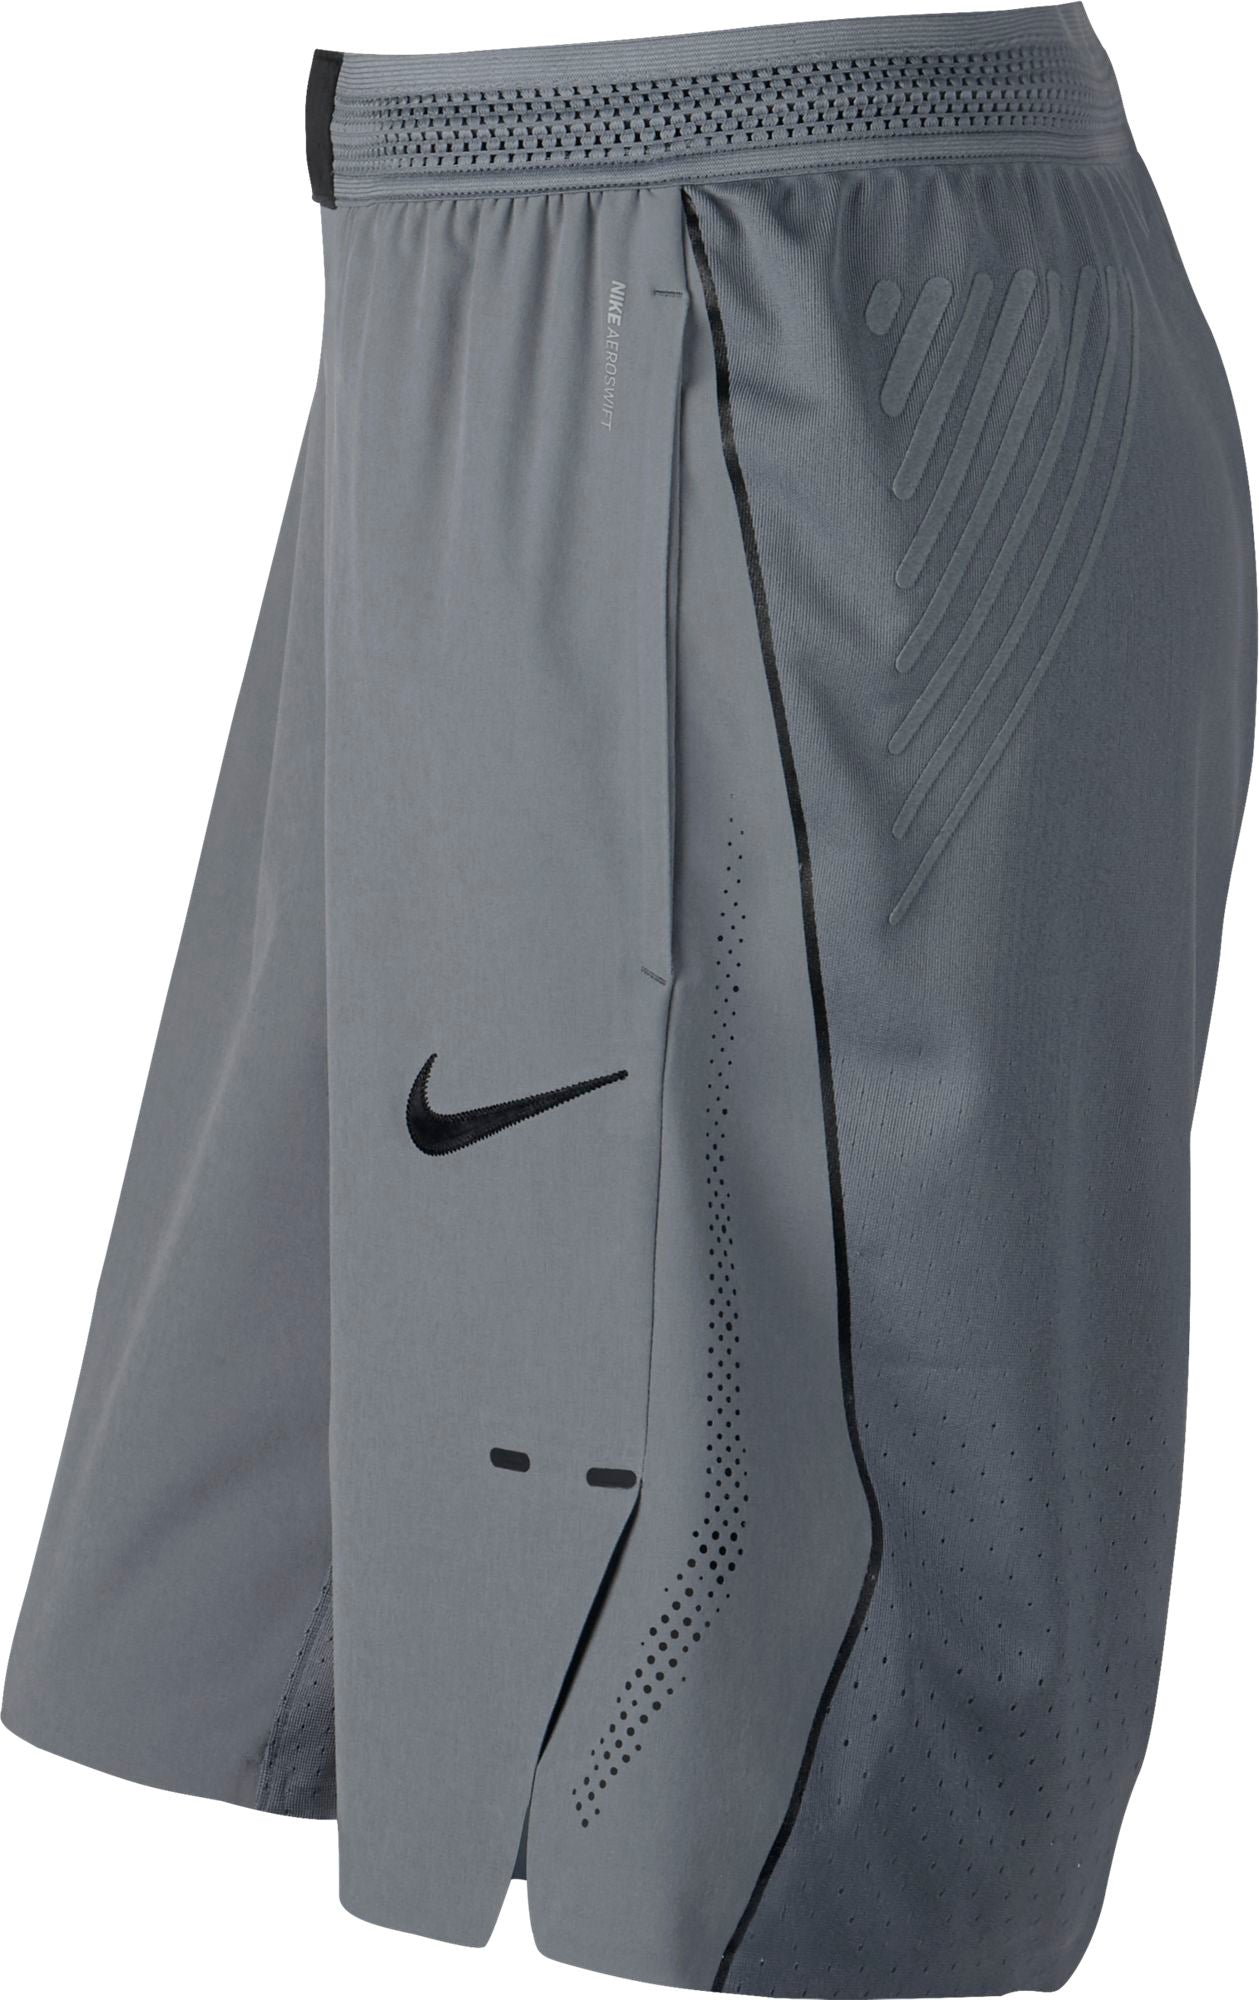 Nike Womens Basketball Aeroswift Shorts - Cool Grey/Black – SwiSh